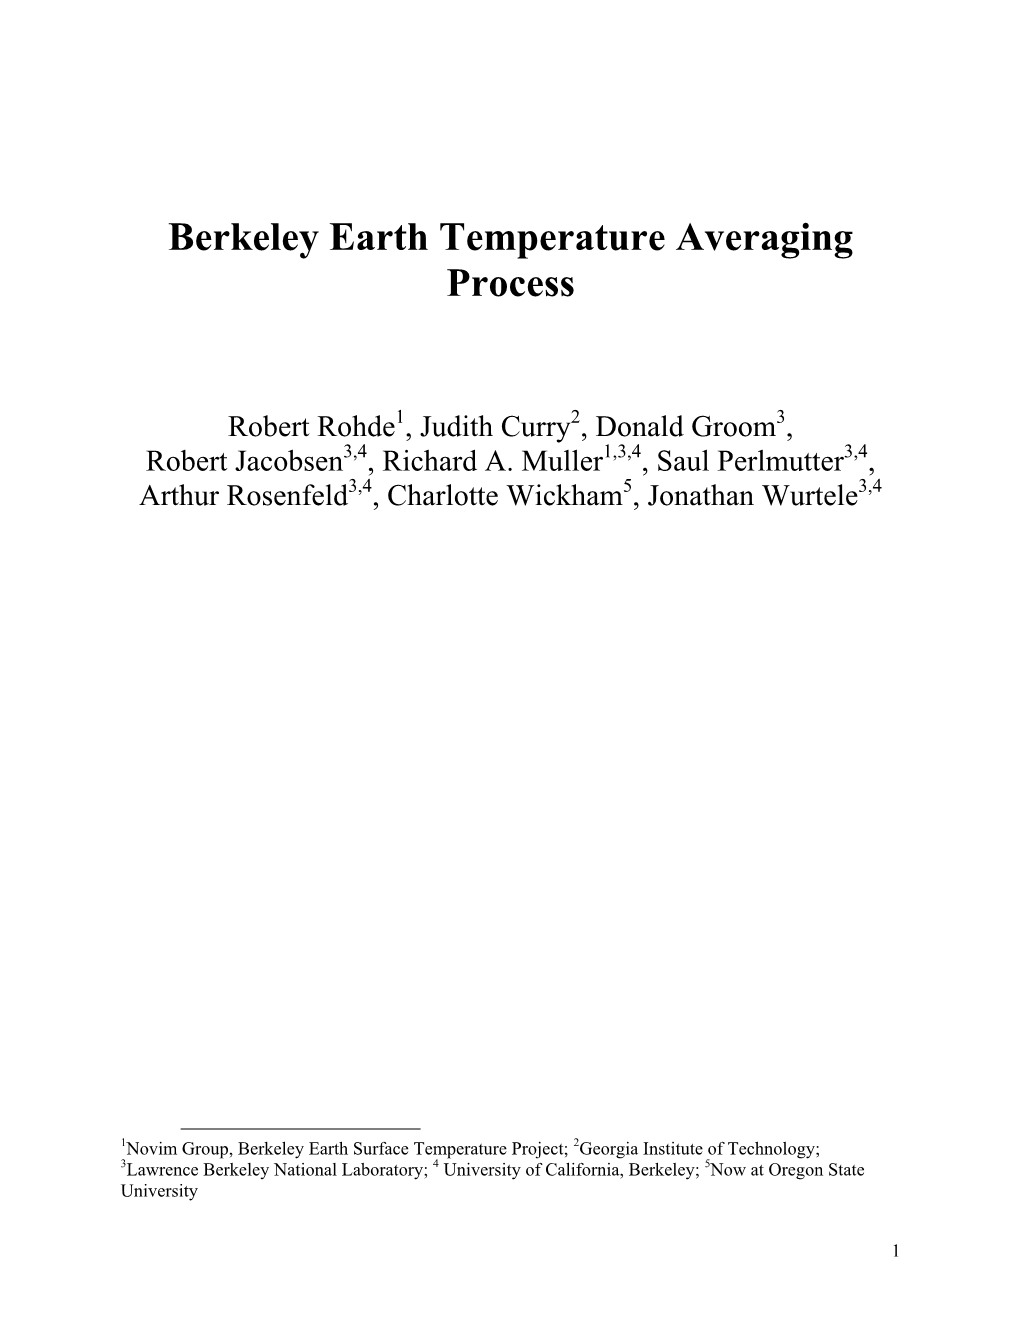 Berkeley Earth Temperature Averaging Process